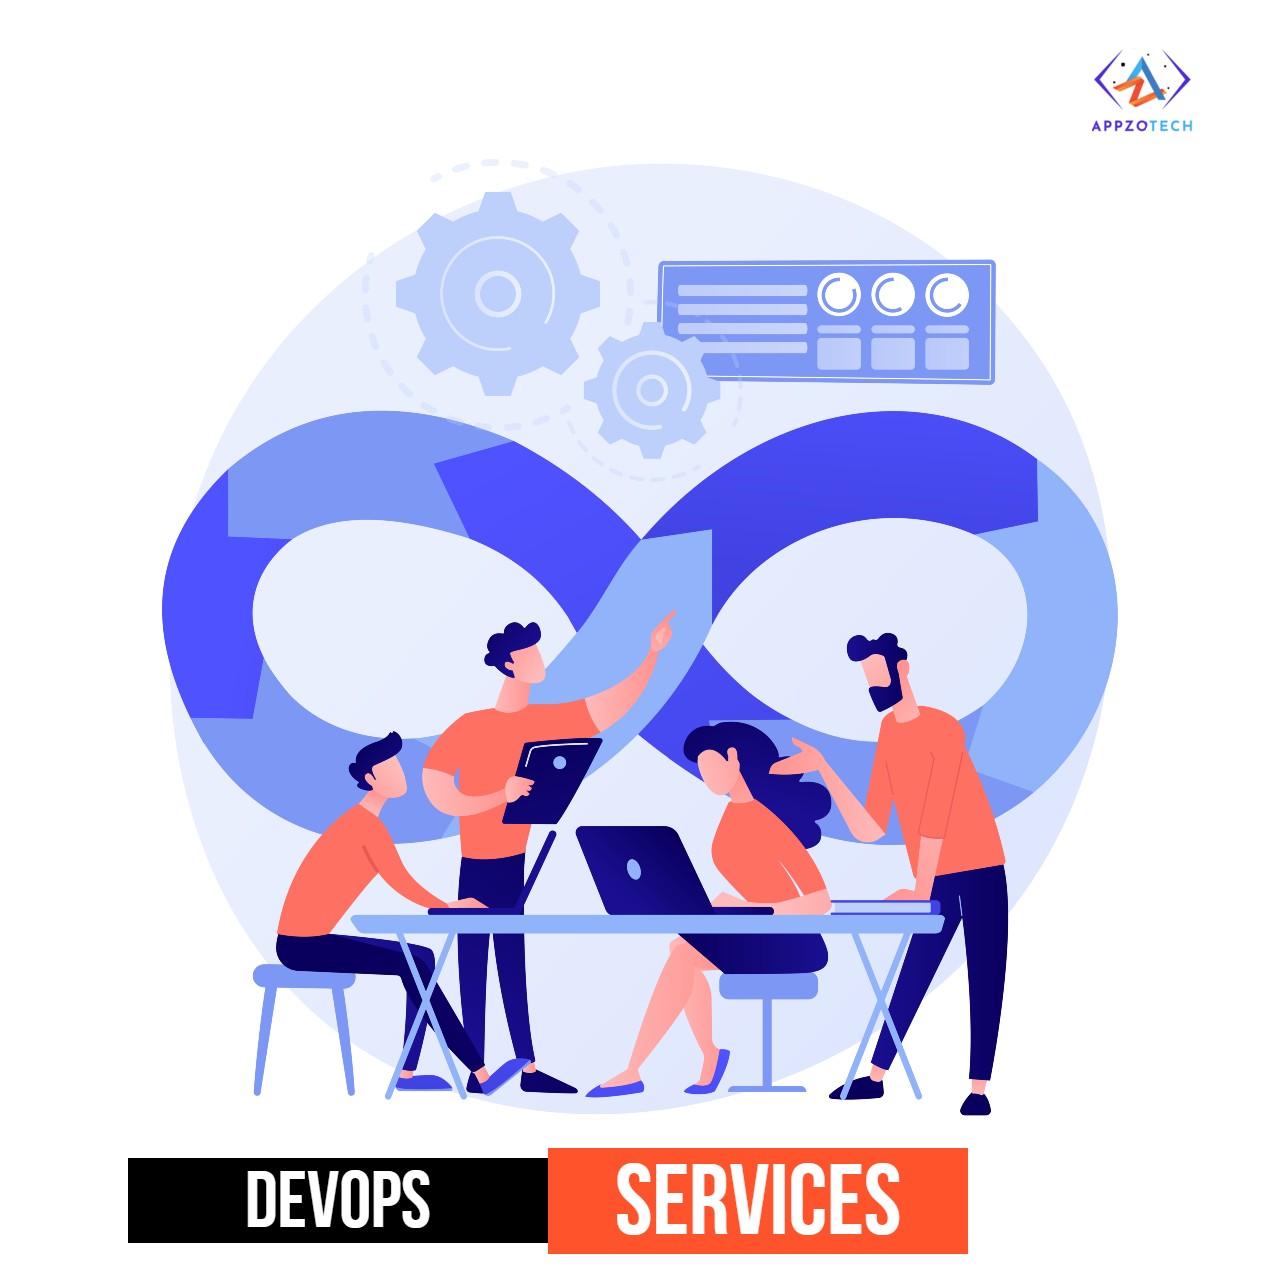 DevOps as a services